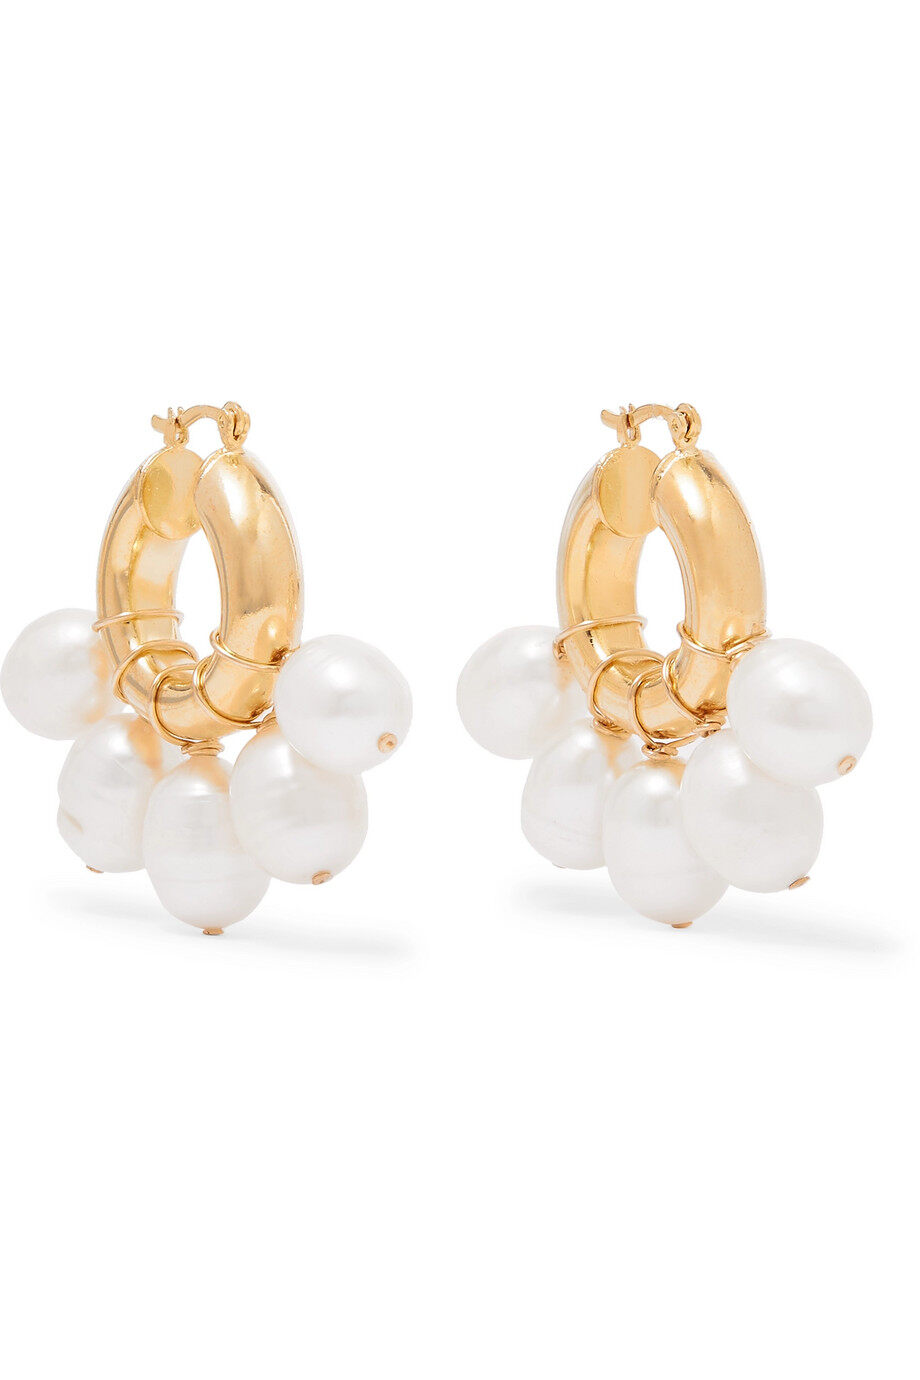 寓意「圓滿」的珍珠是結婚禮物首選 $3000以下珍珠耳環推介